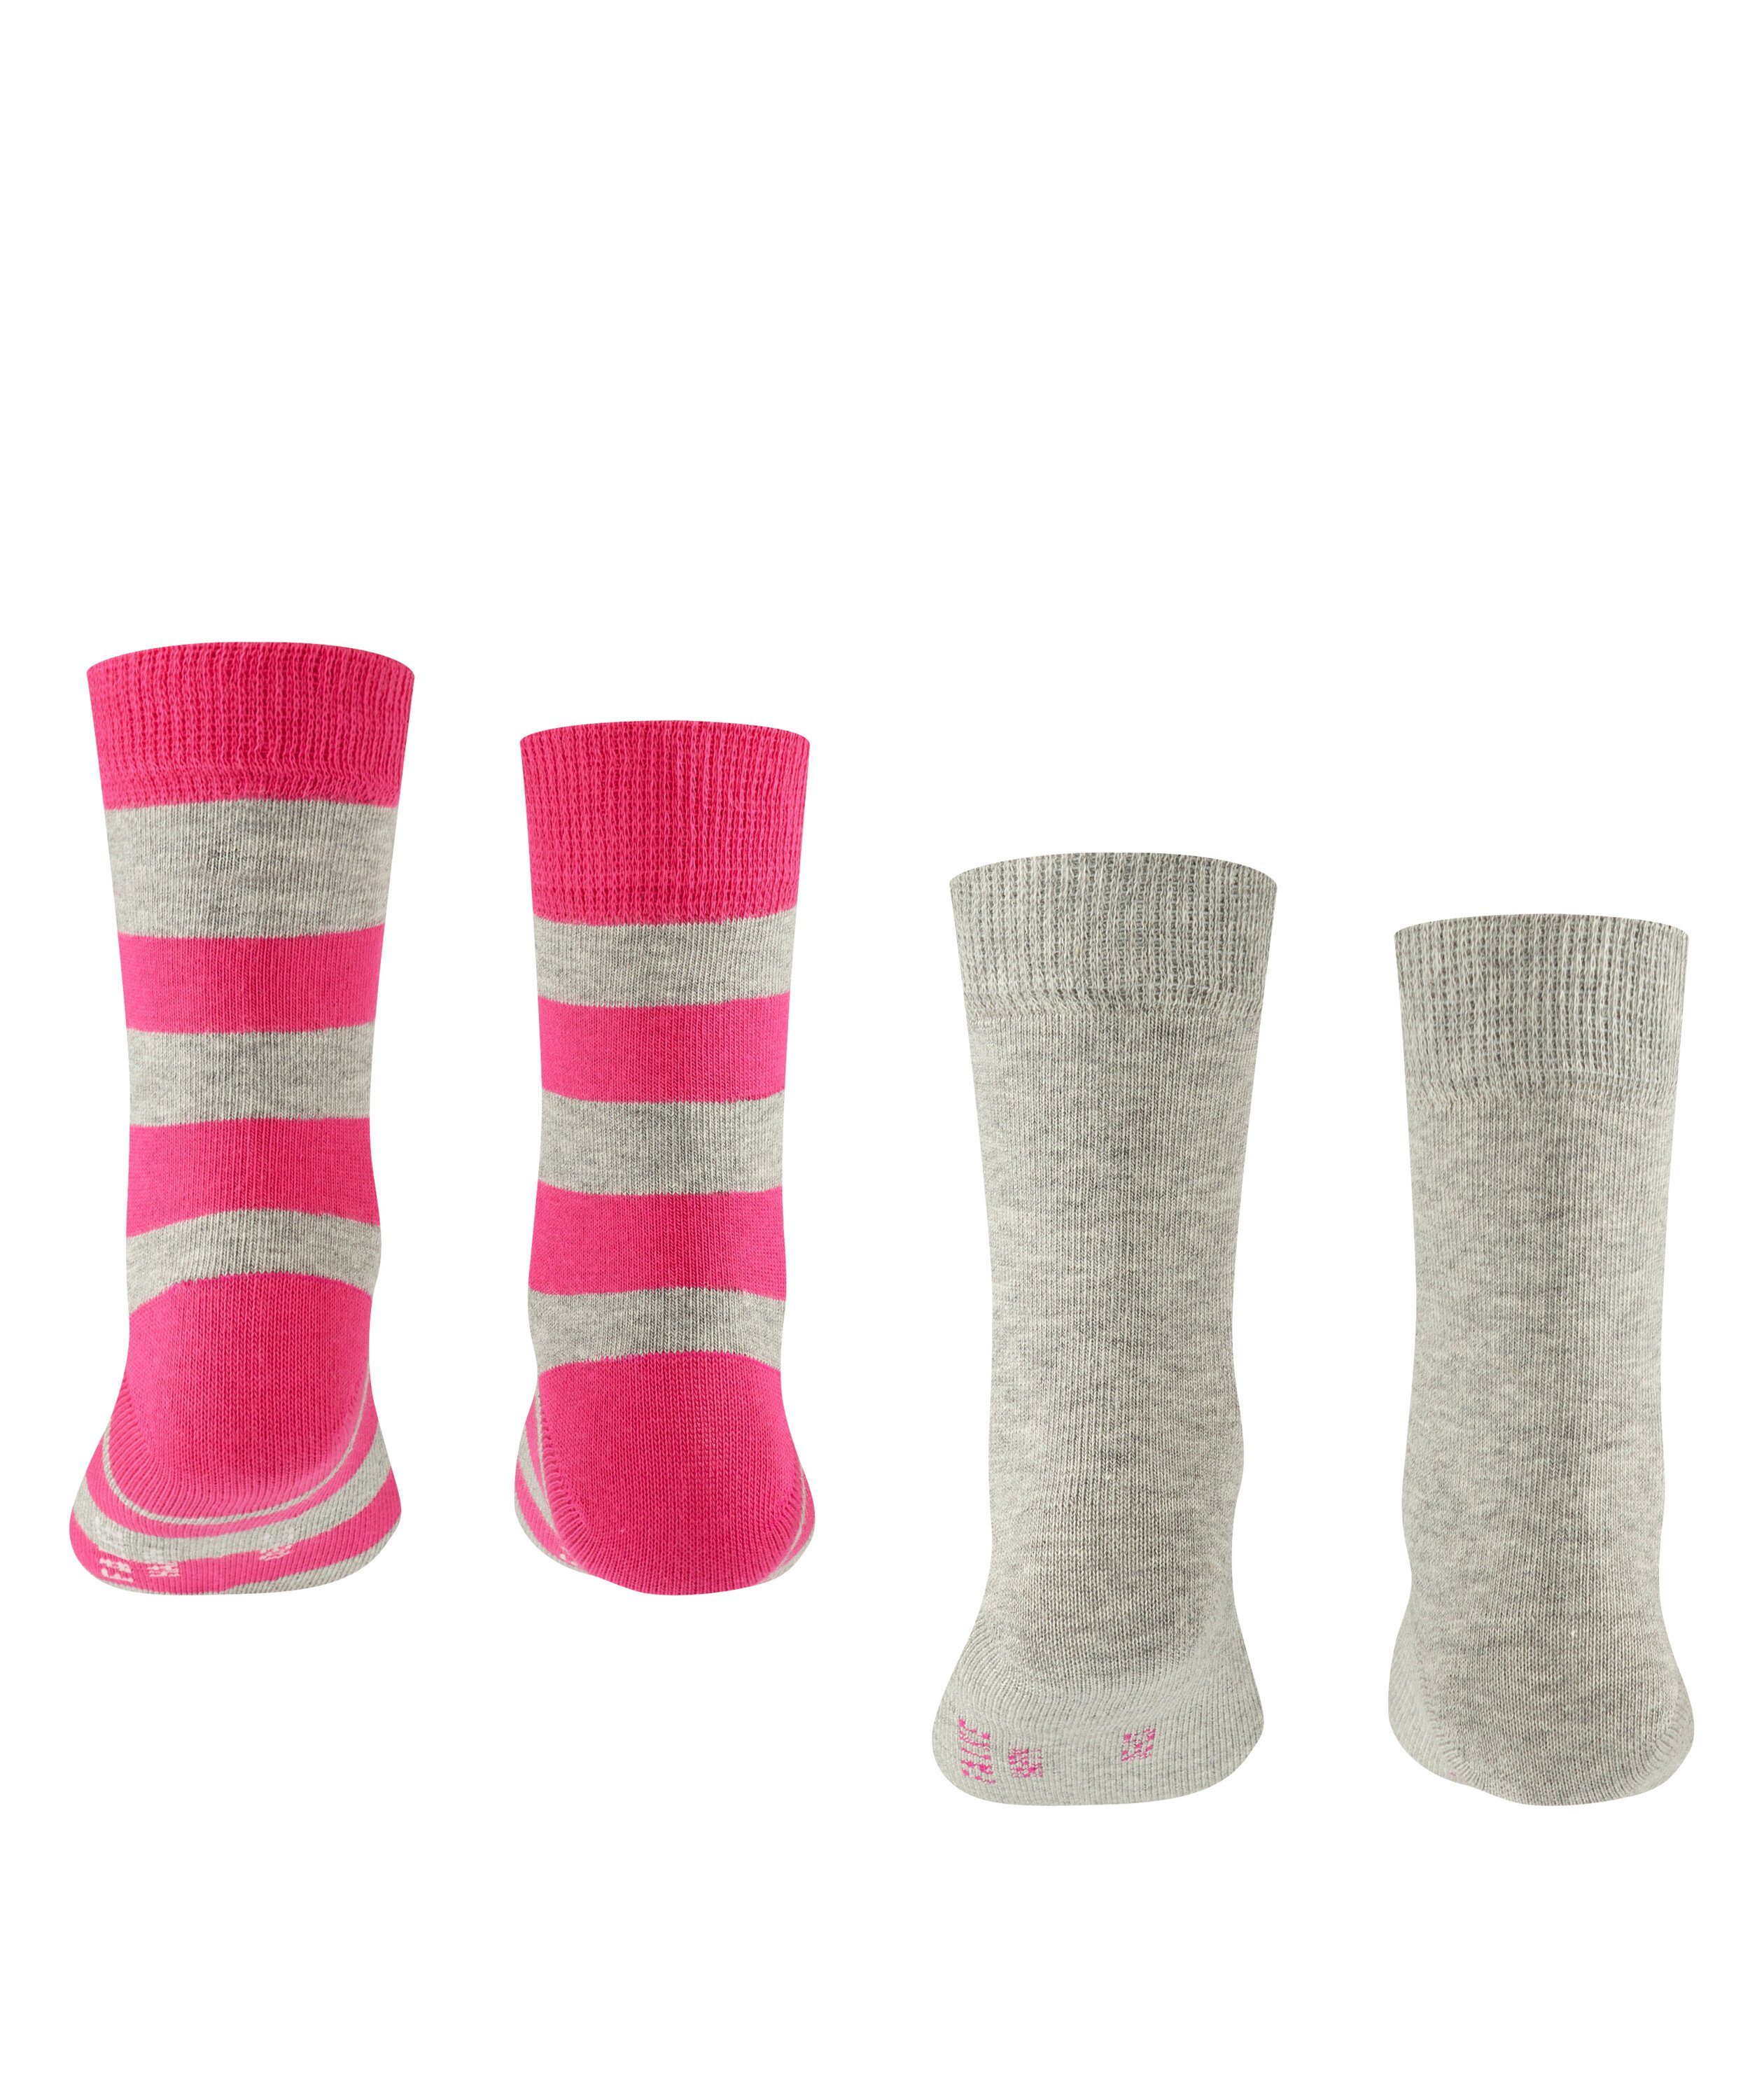 FALKE Socken Happy Stripe 2-Pack grey (3400) (2-Paar) light